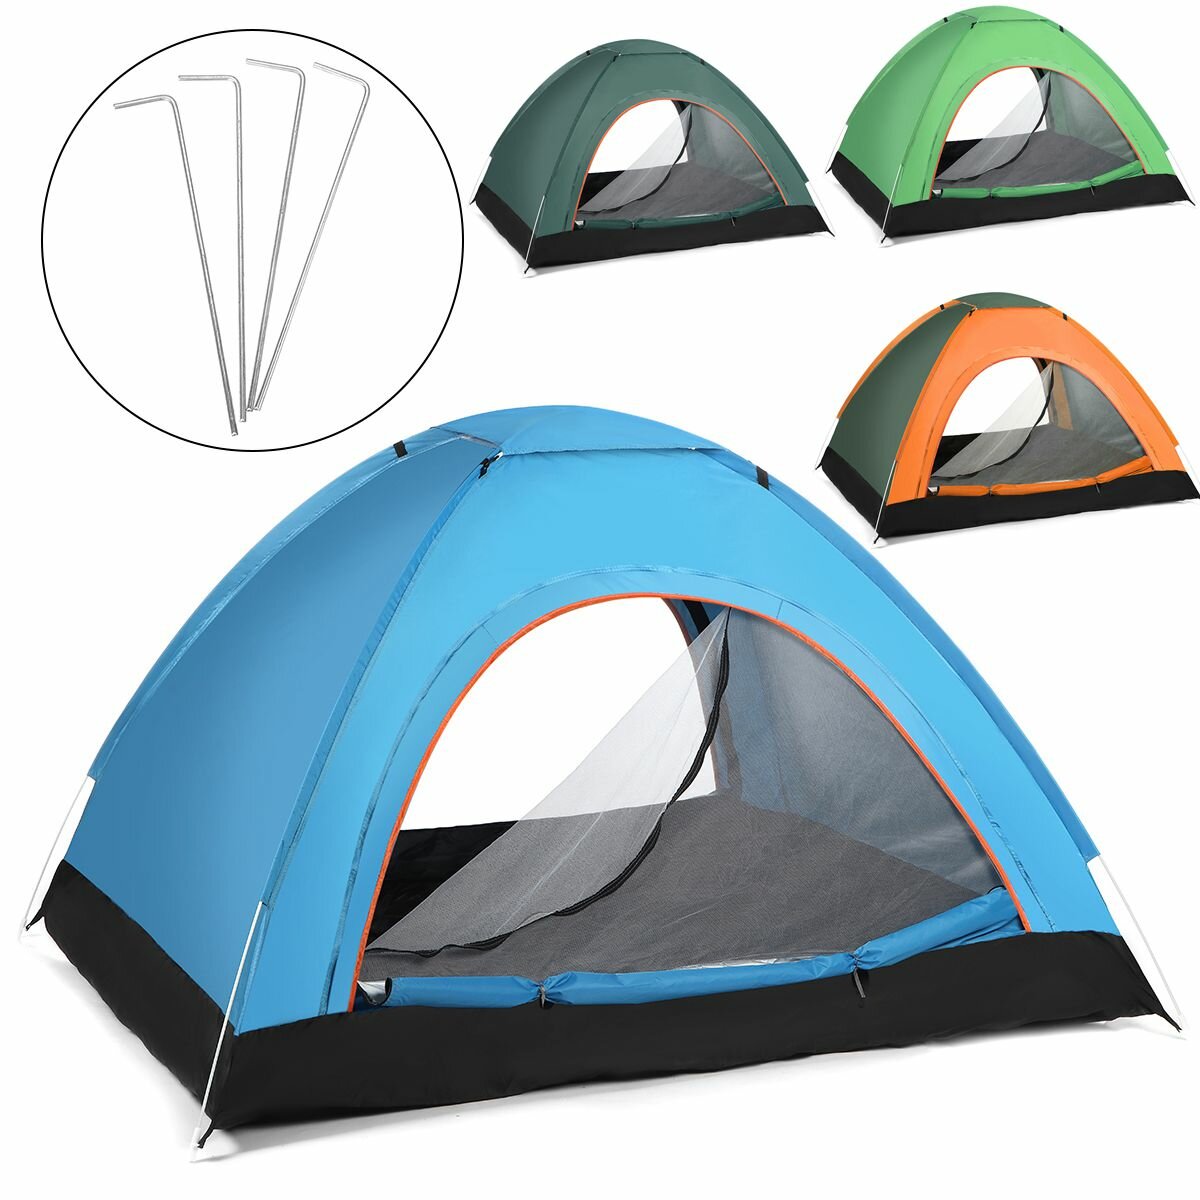 2〜3人用の完全自動防風・防水・UVカットキャンプテント、アウトドア旅行、ハイキング、ビーチに最適。